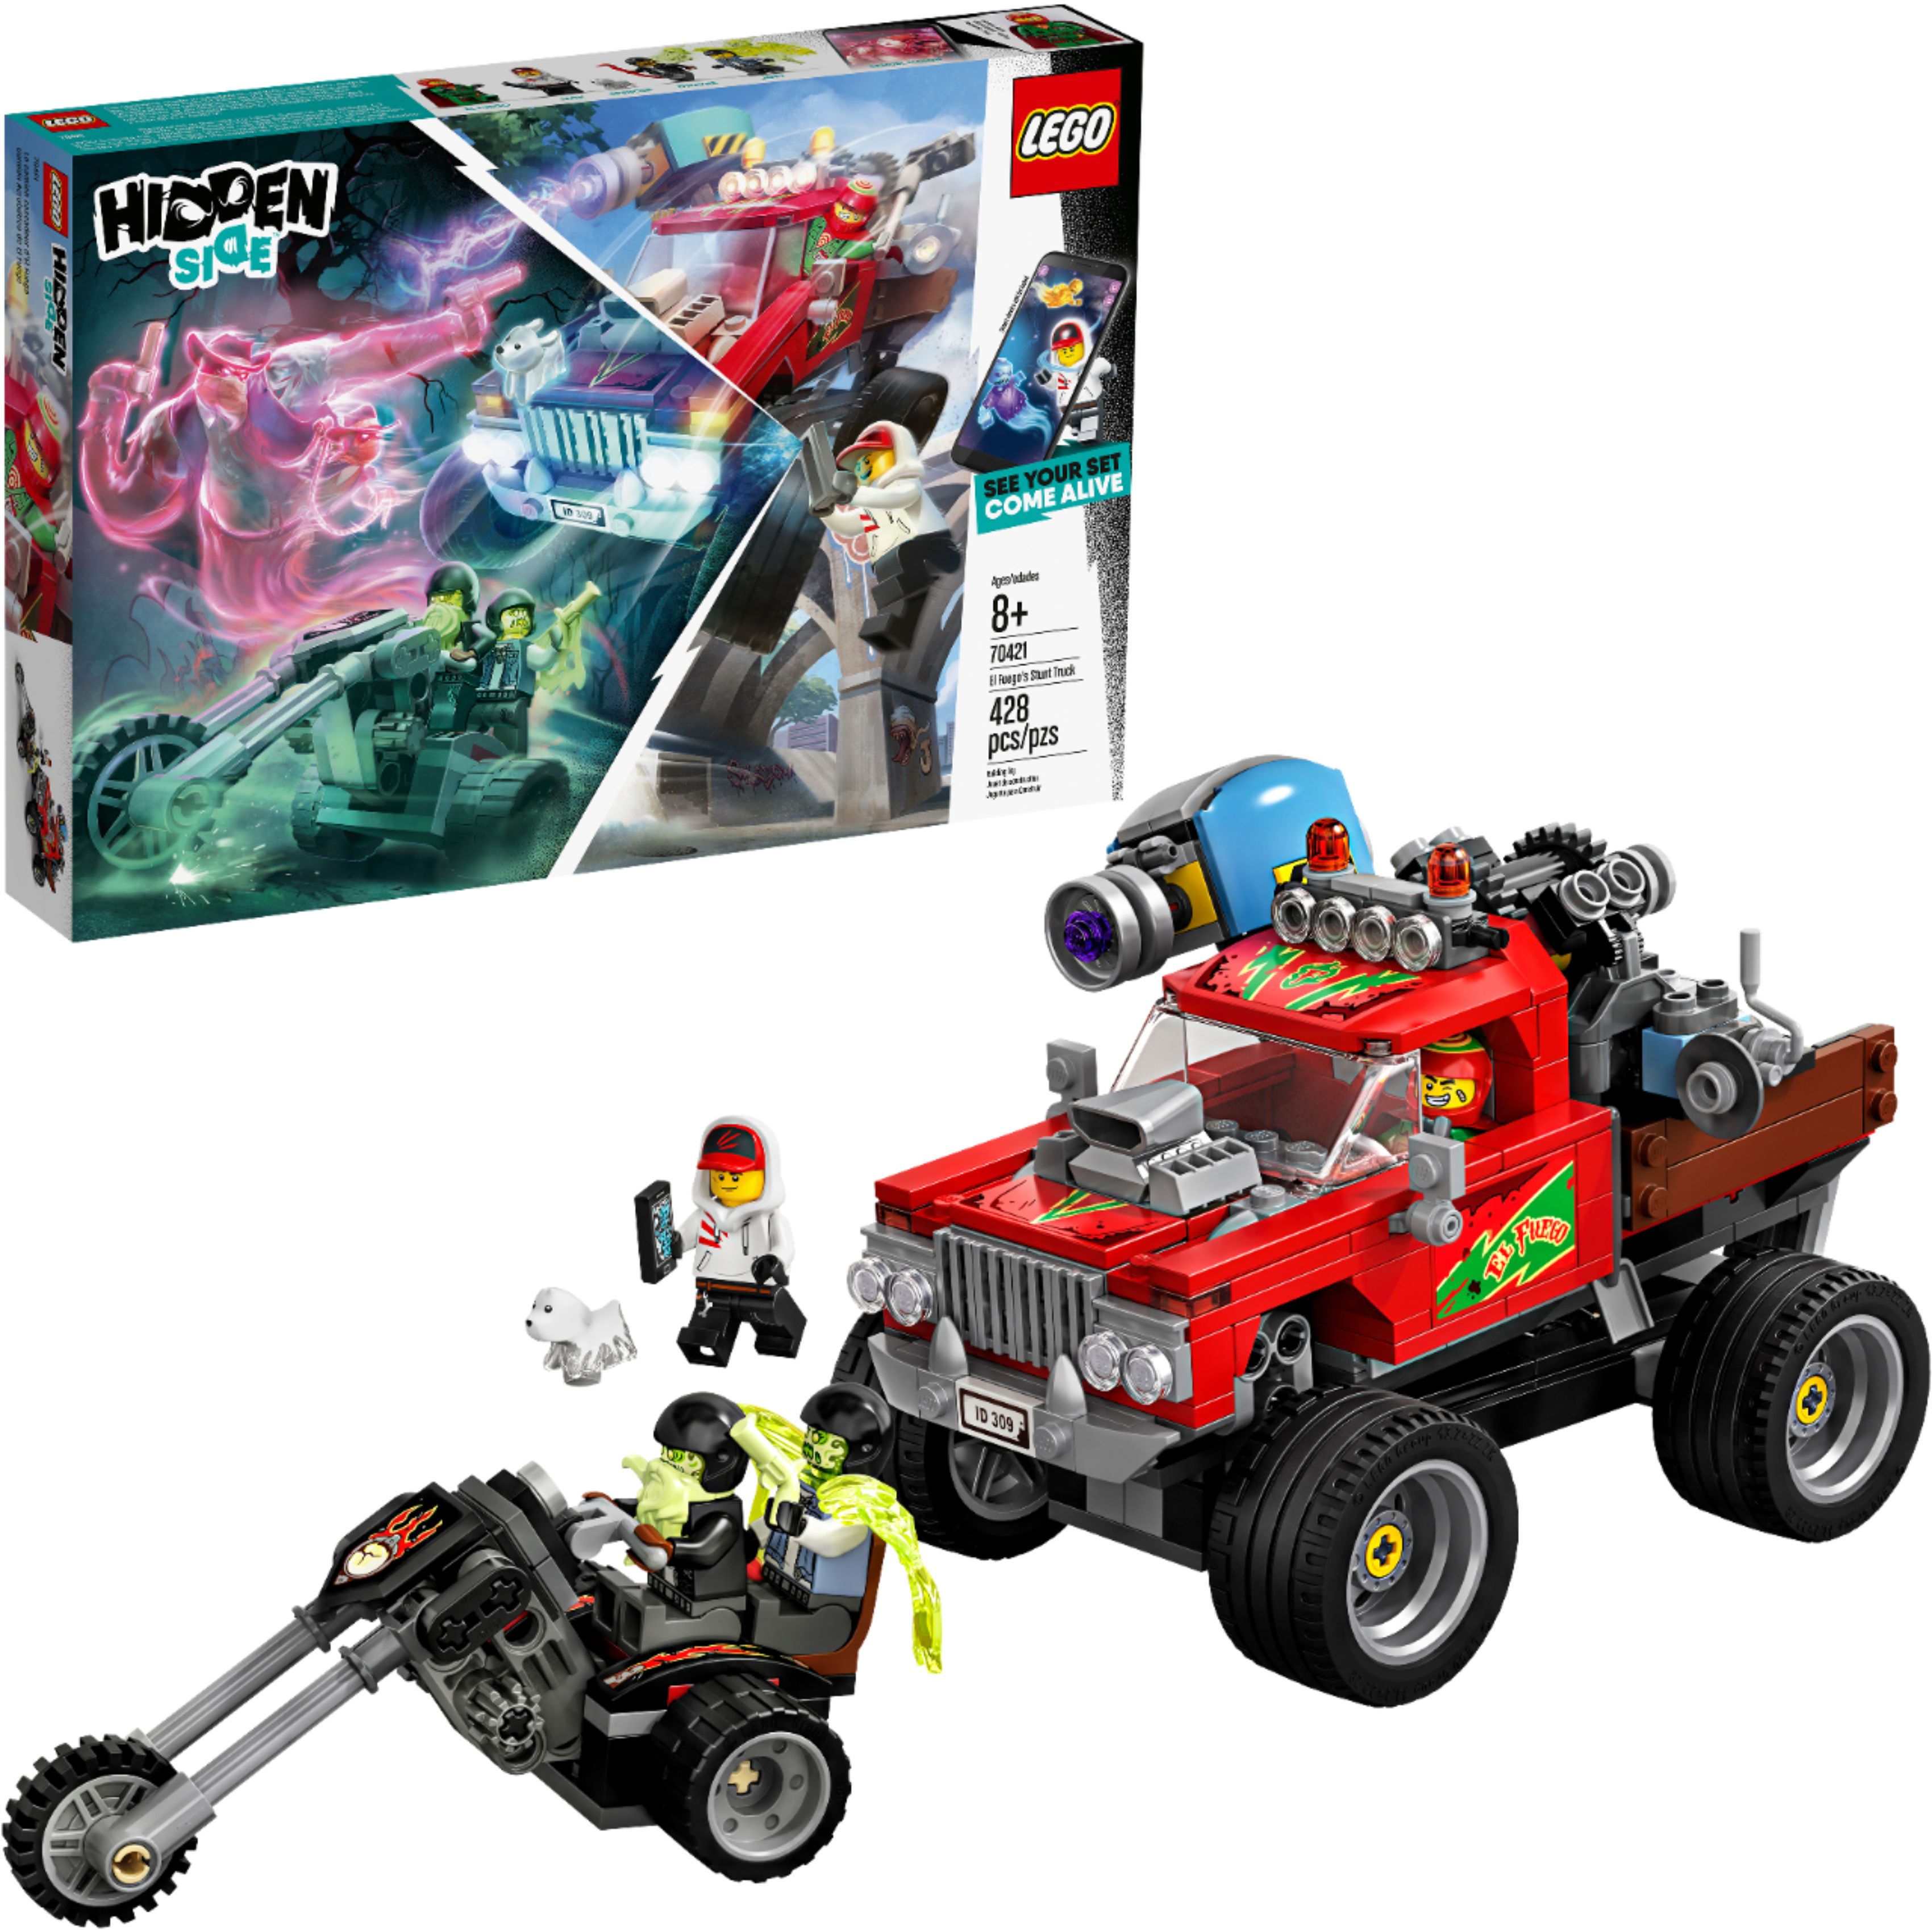 LEGO Hidden Side El Stunt Truck 70421 - Buy